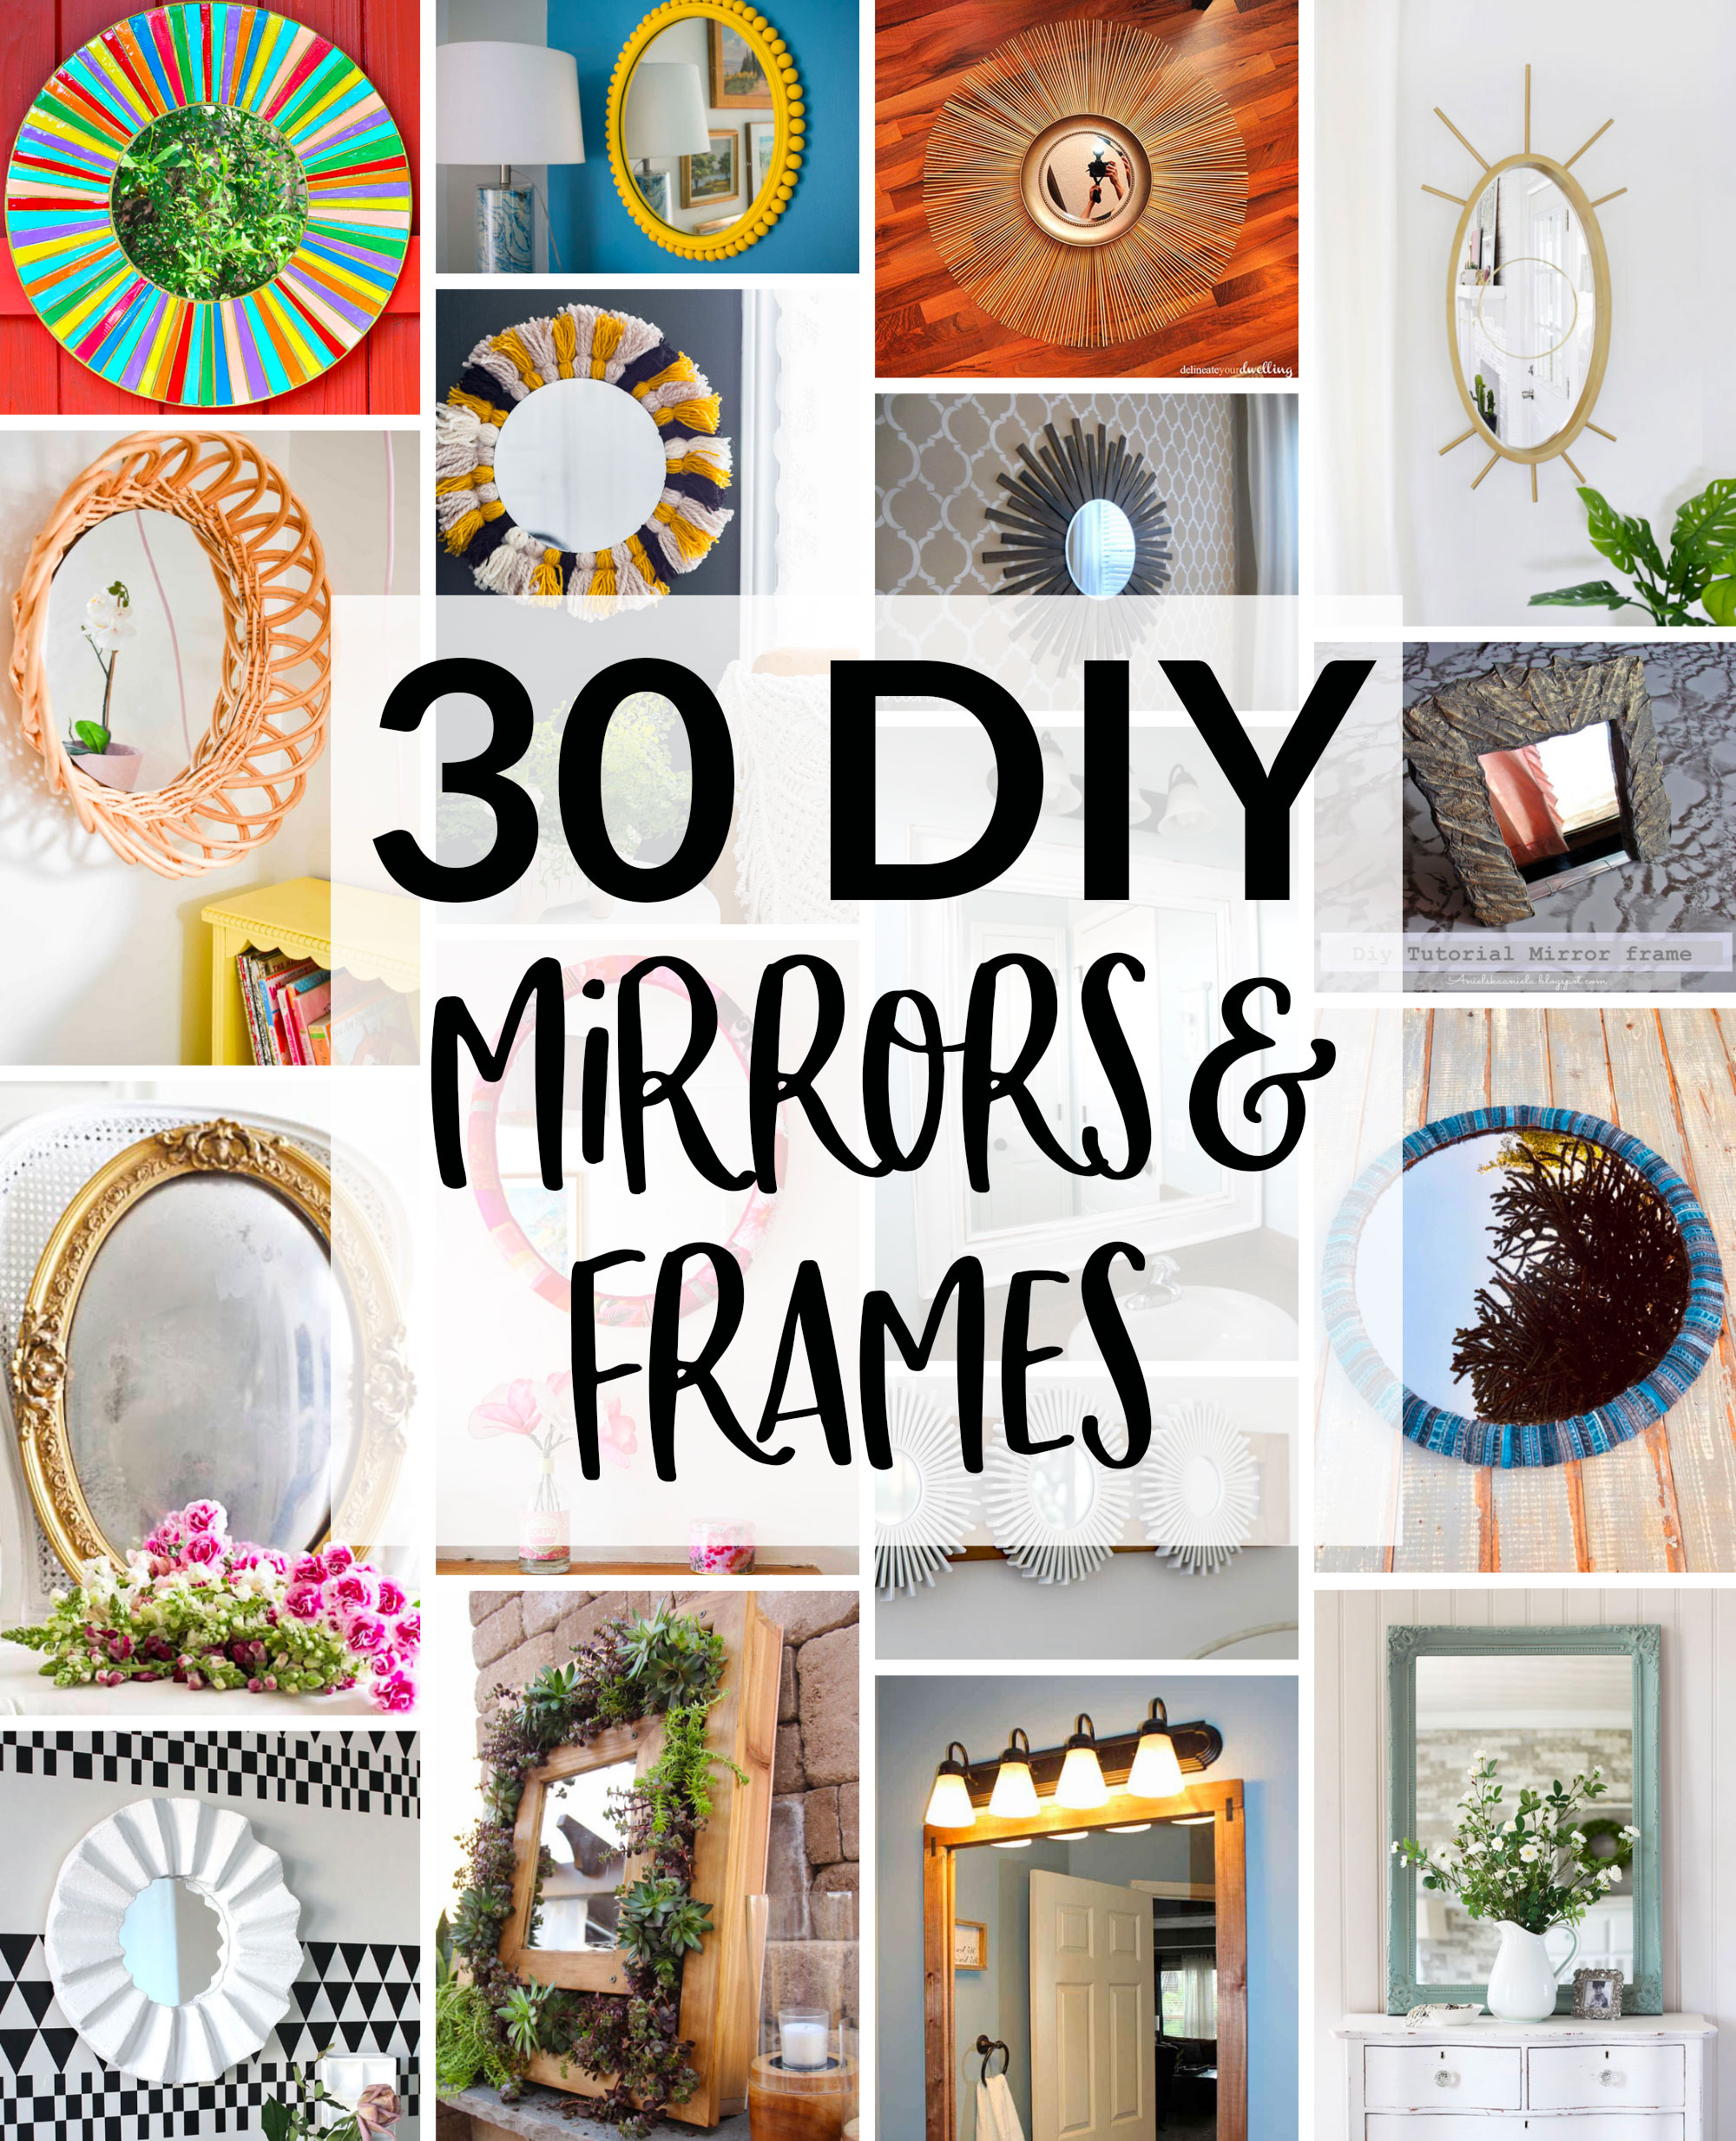 30 Diy Mirror Frames Scratch And Stitch - Diy Bathroom Mirror Frame Decorating Ideas